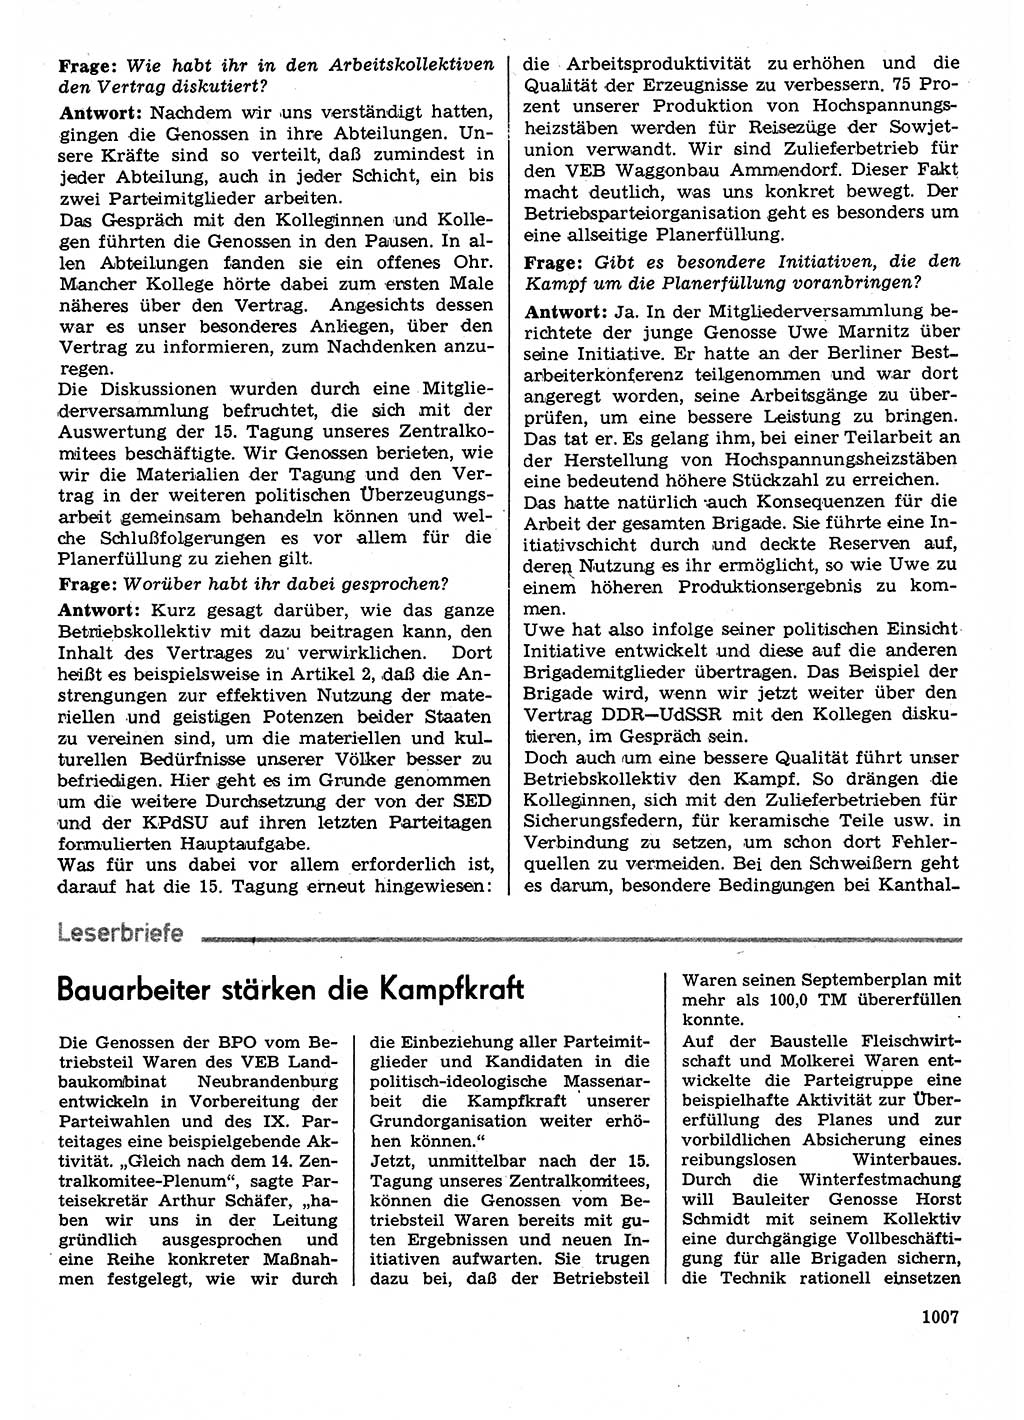 Neuer Weg (NW), Organ des Zentralkomitees (ZK) der SED (Sozialistische Einheitspartei Deutschlands) für Fragen des Parteilebens, 30. Jahrgang [Deutsche Demokratische Republik (DDR)] 1975, Seite 1007 (NW ZK SED DDR 1975, S. 1007)